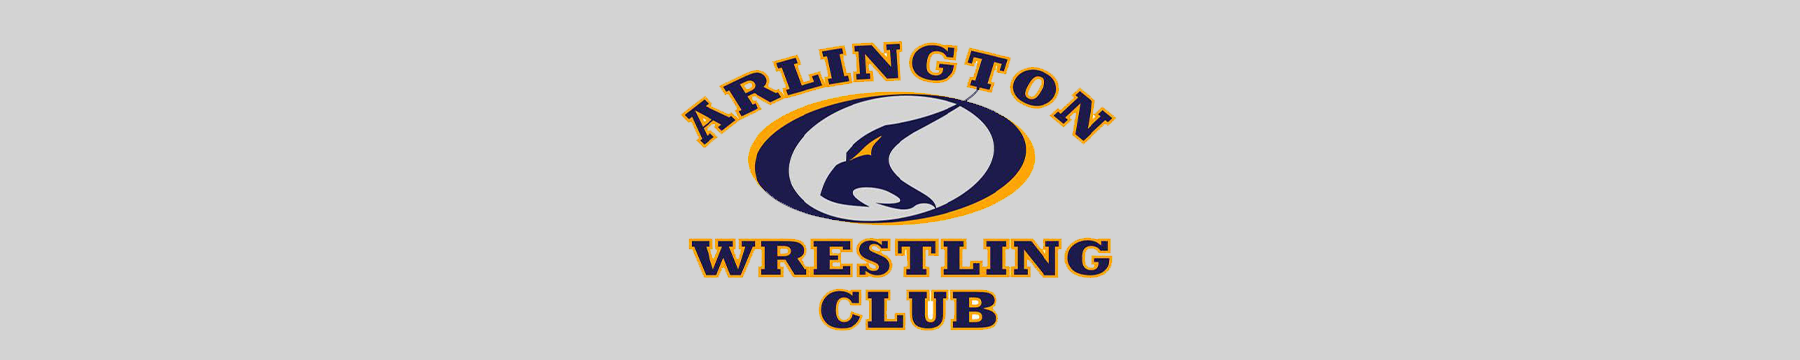 Arlington Wrestling Club